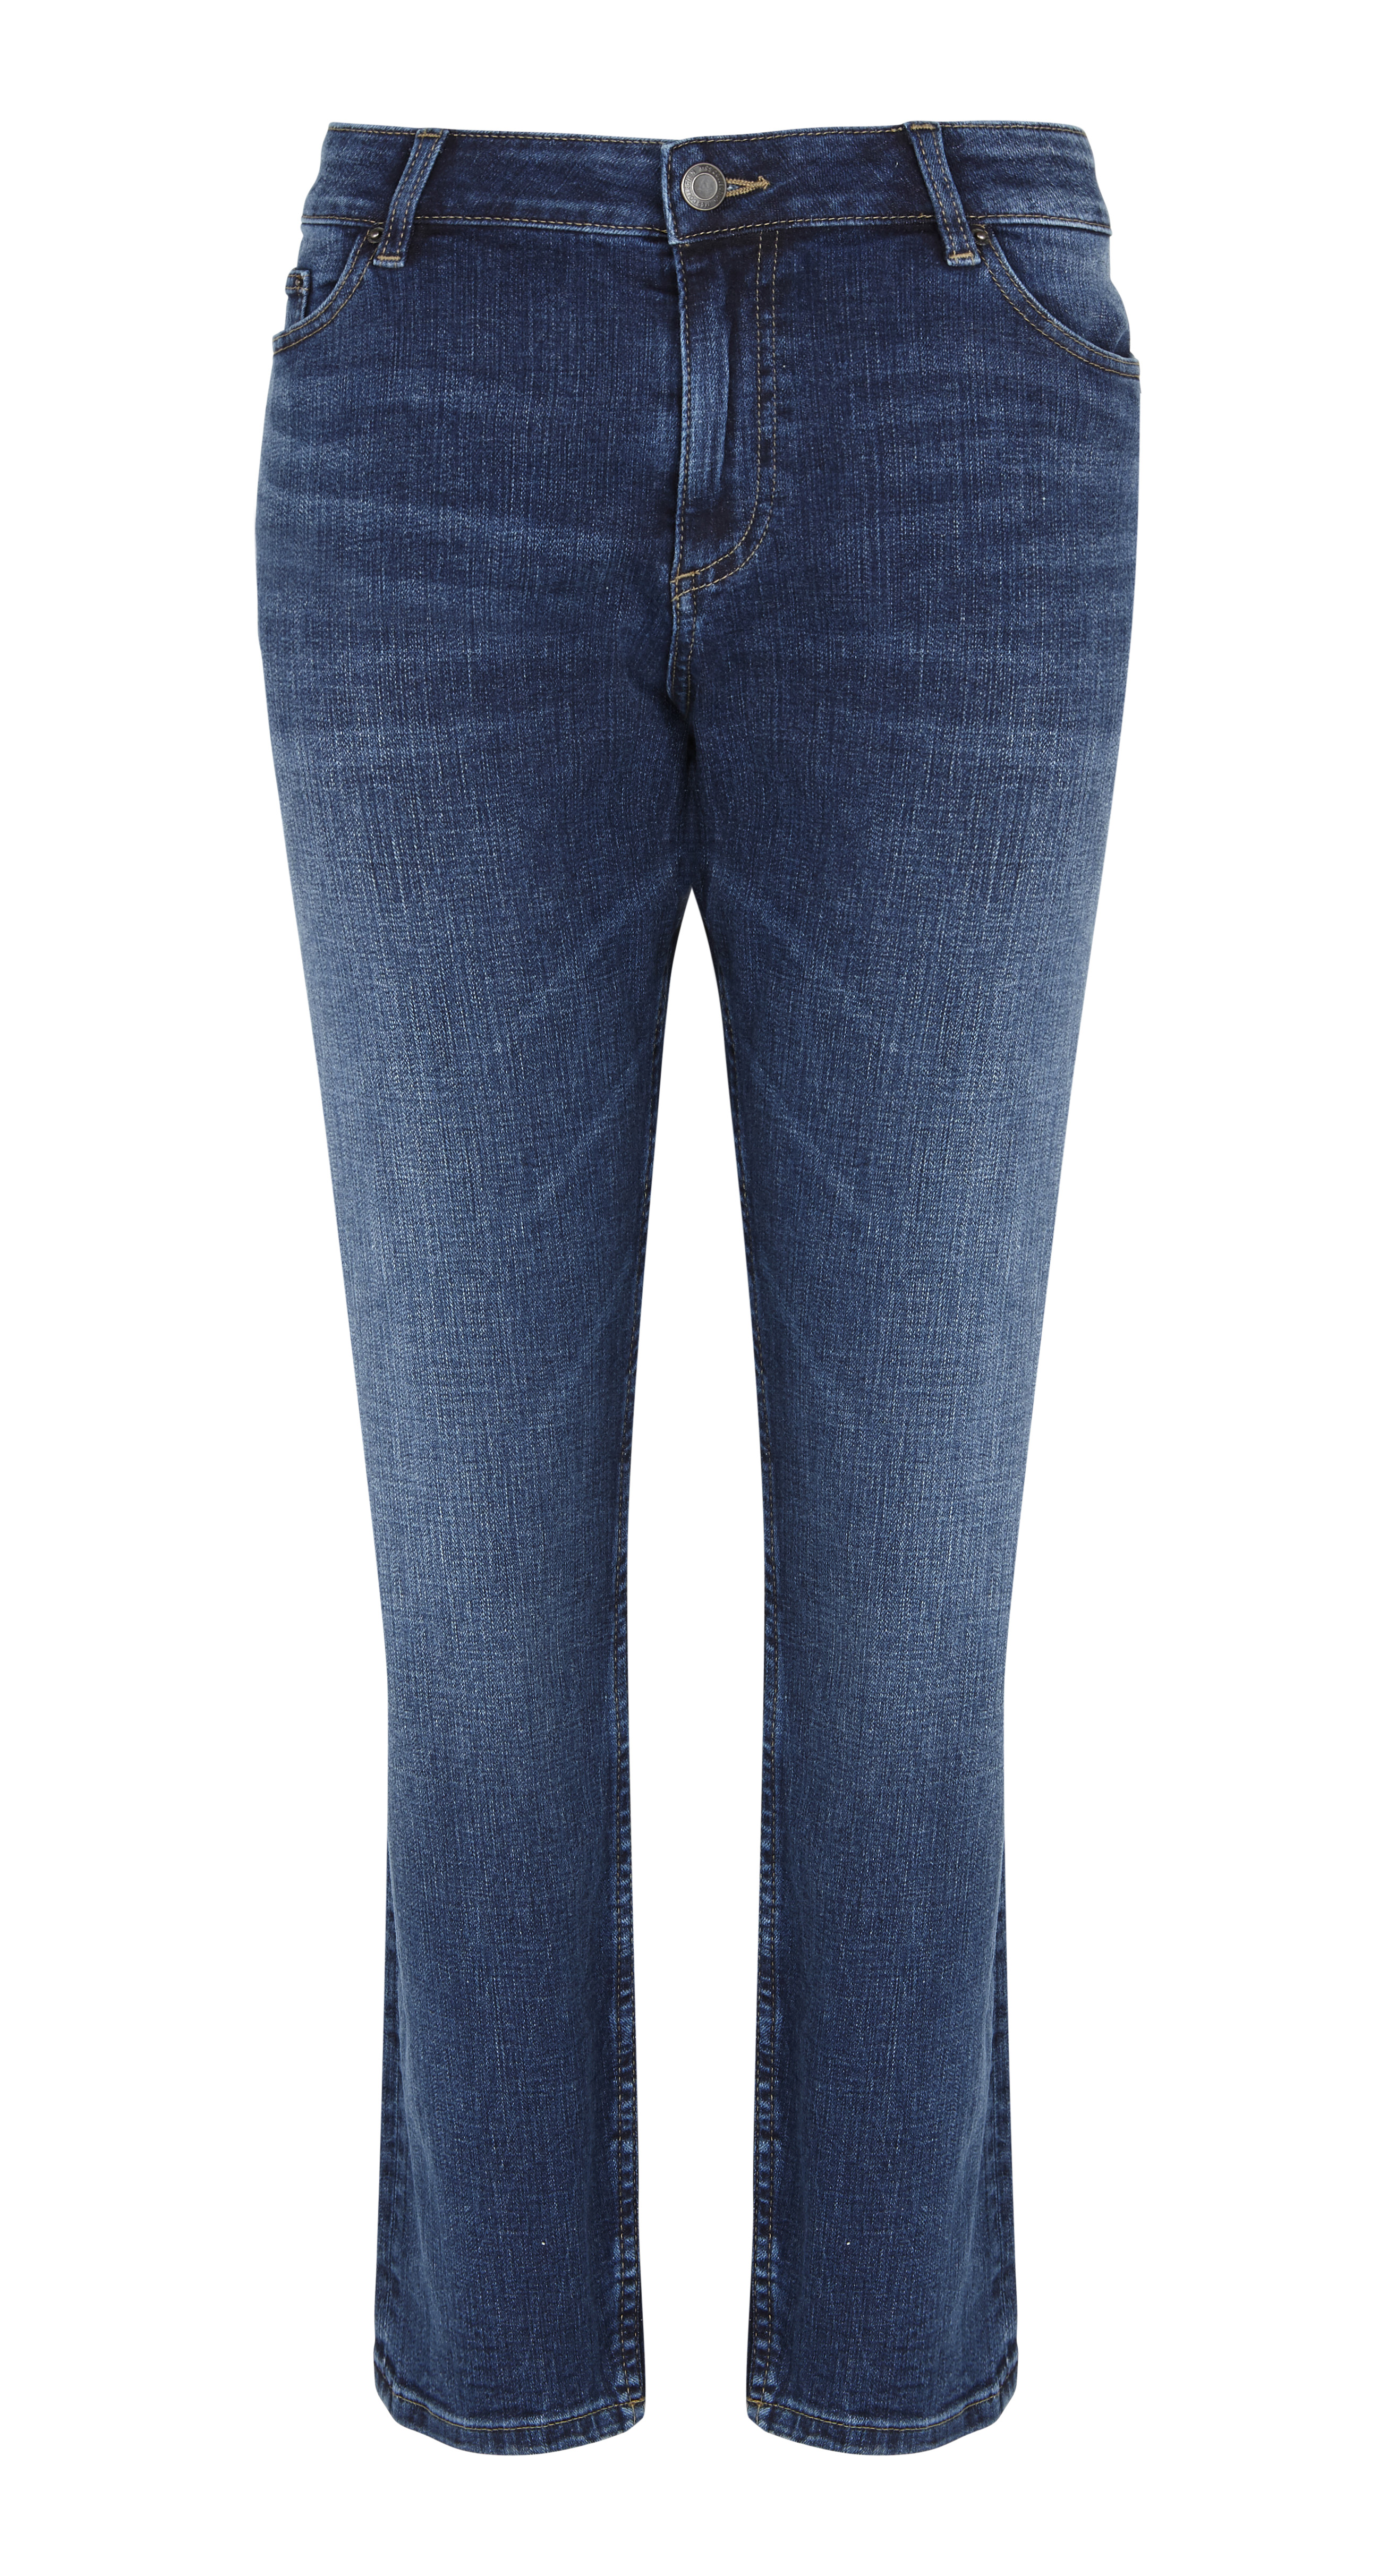 Τα 3 πιο κολακευτικά είδη jeans δεν είναι αυτά που φαντάζεσαι